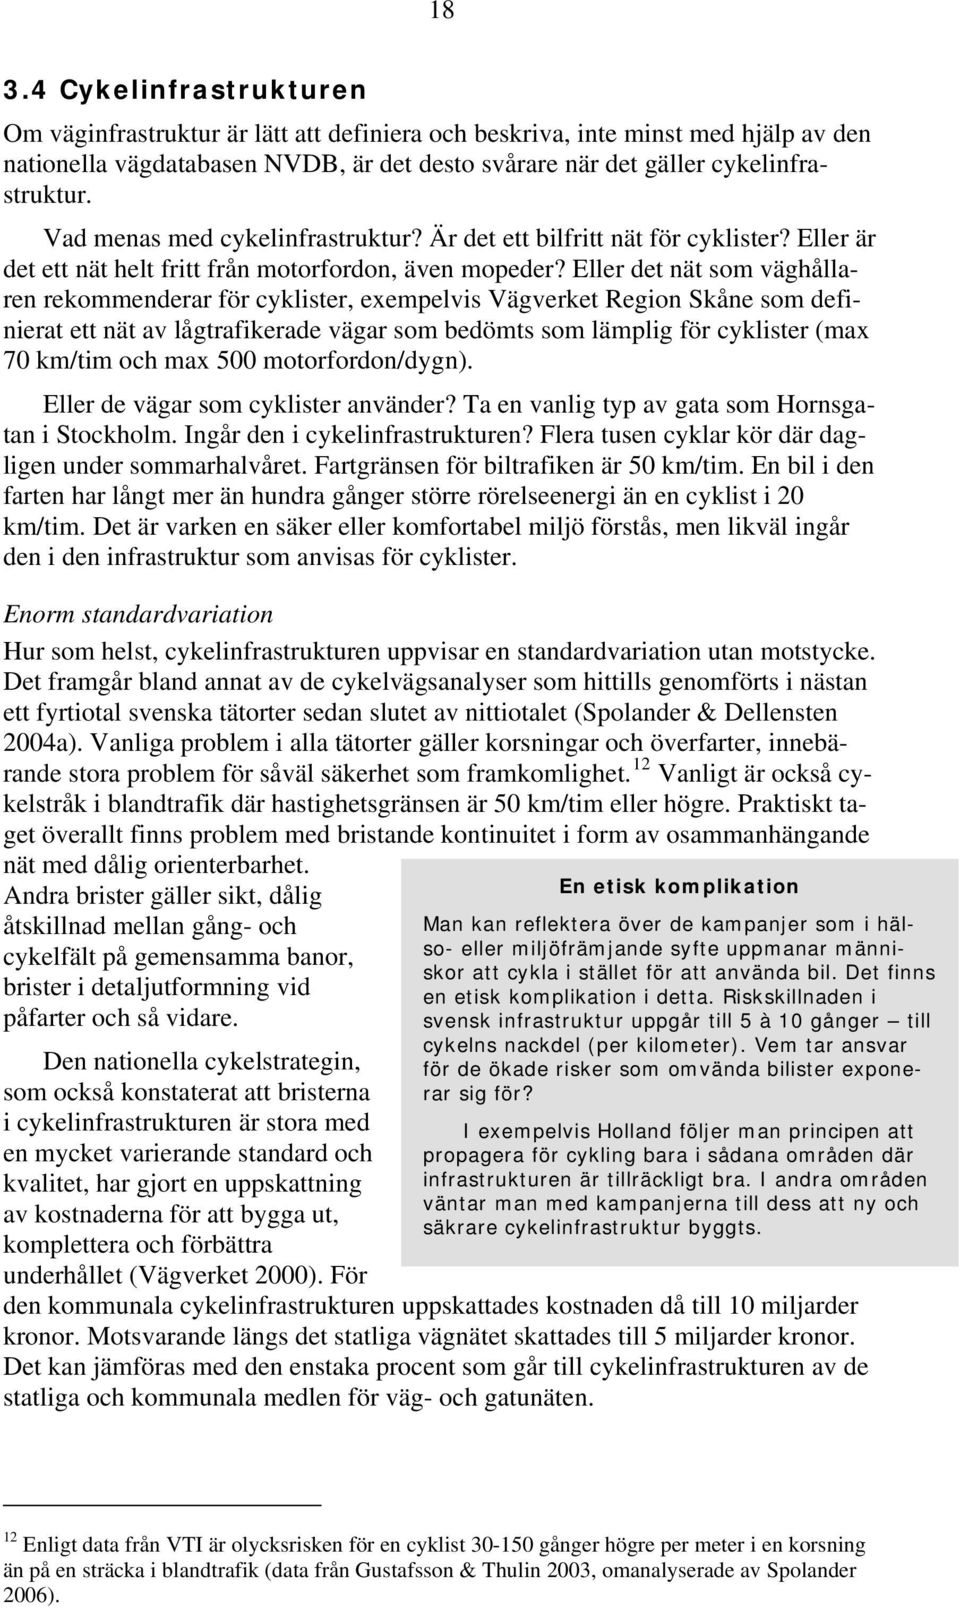 Eller det nät som väghållaren rekommenderar för cyklister, exempelvis Vägverket Region Skåne som definierat ett nät av lågtrafikerade vägar som bedömts som lämplig för cyklister (max 70 km/tim och